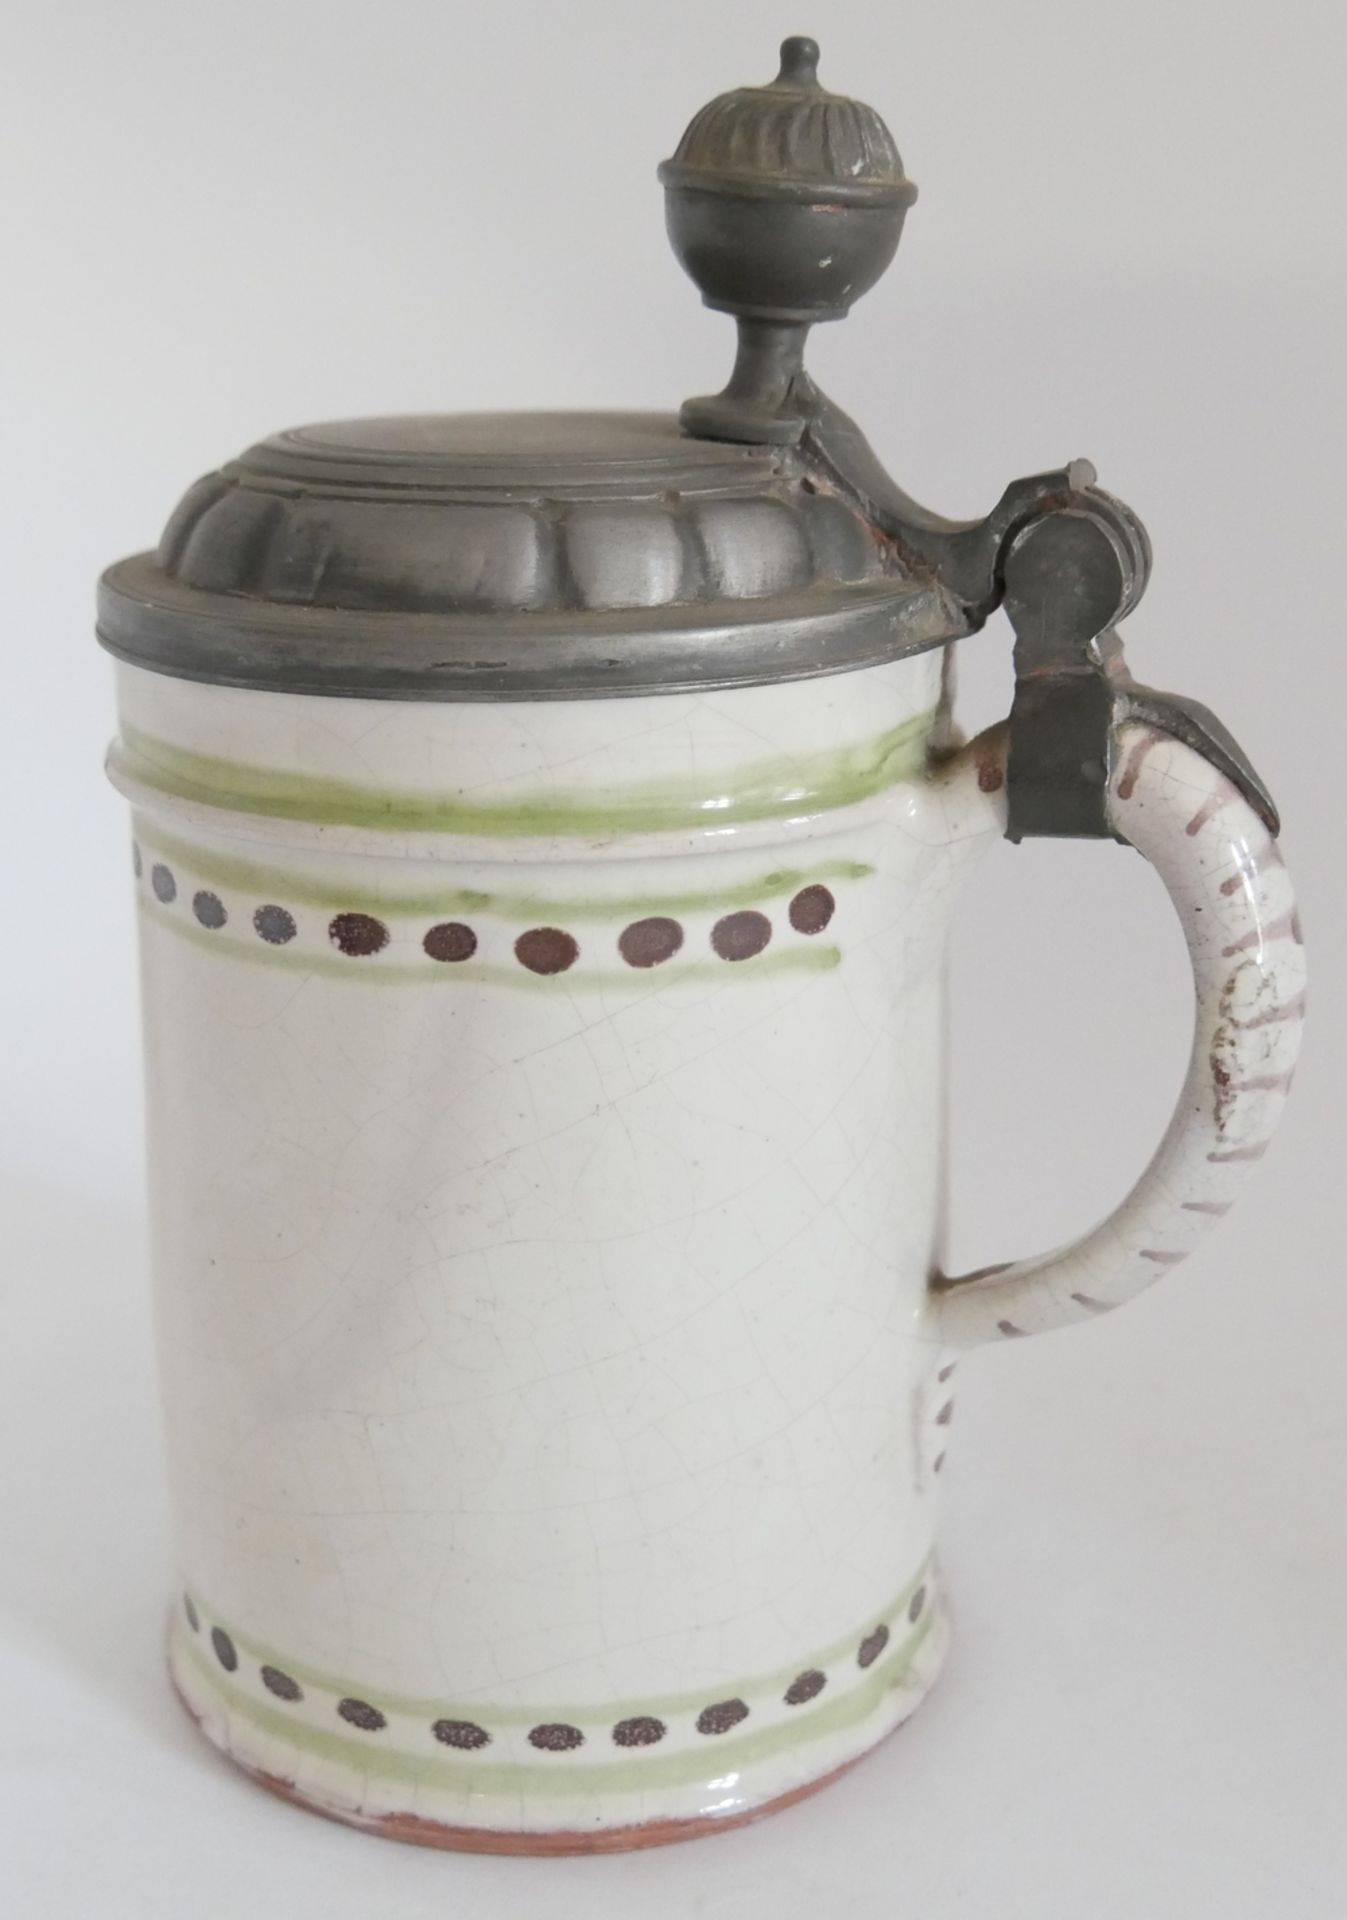 1 alter Keramik Bierkrug um 1820, mit Zinndaumendrücker. Höhe ca. 18 cm. Original aus der Zeit - Image 2 of 3